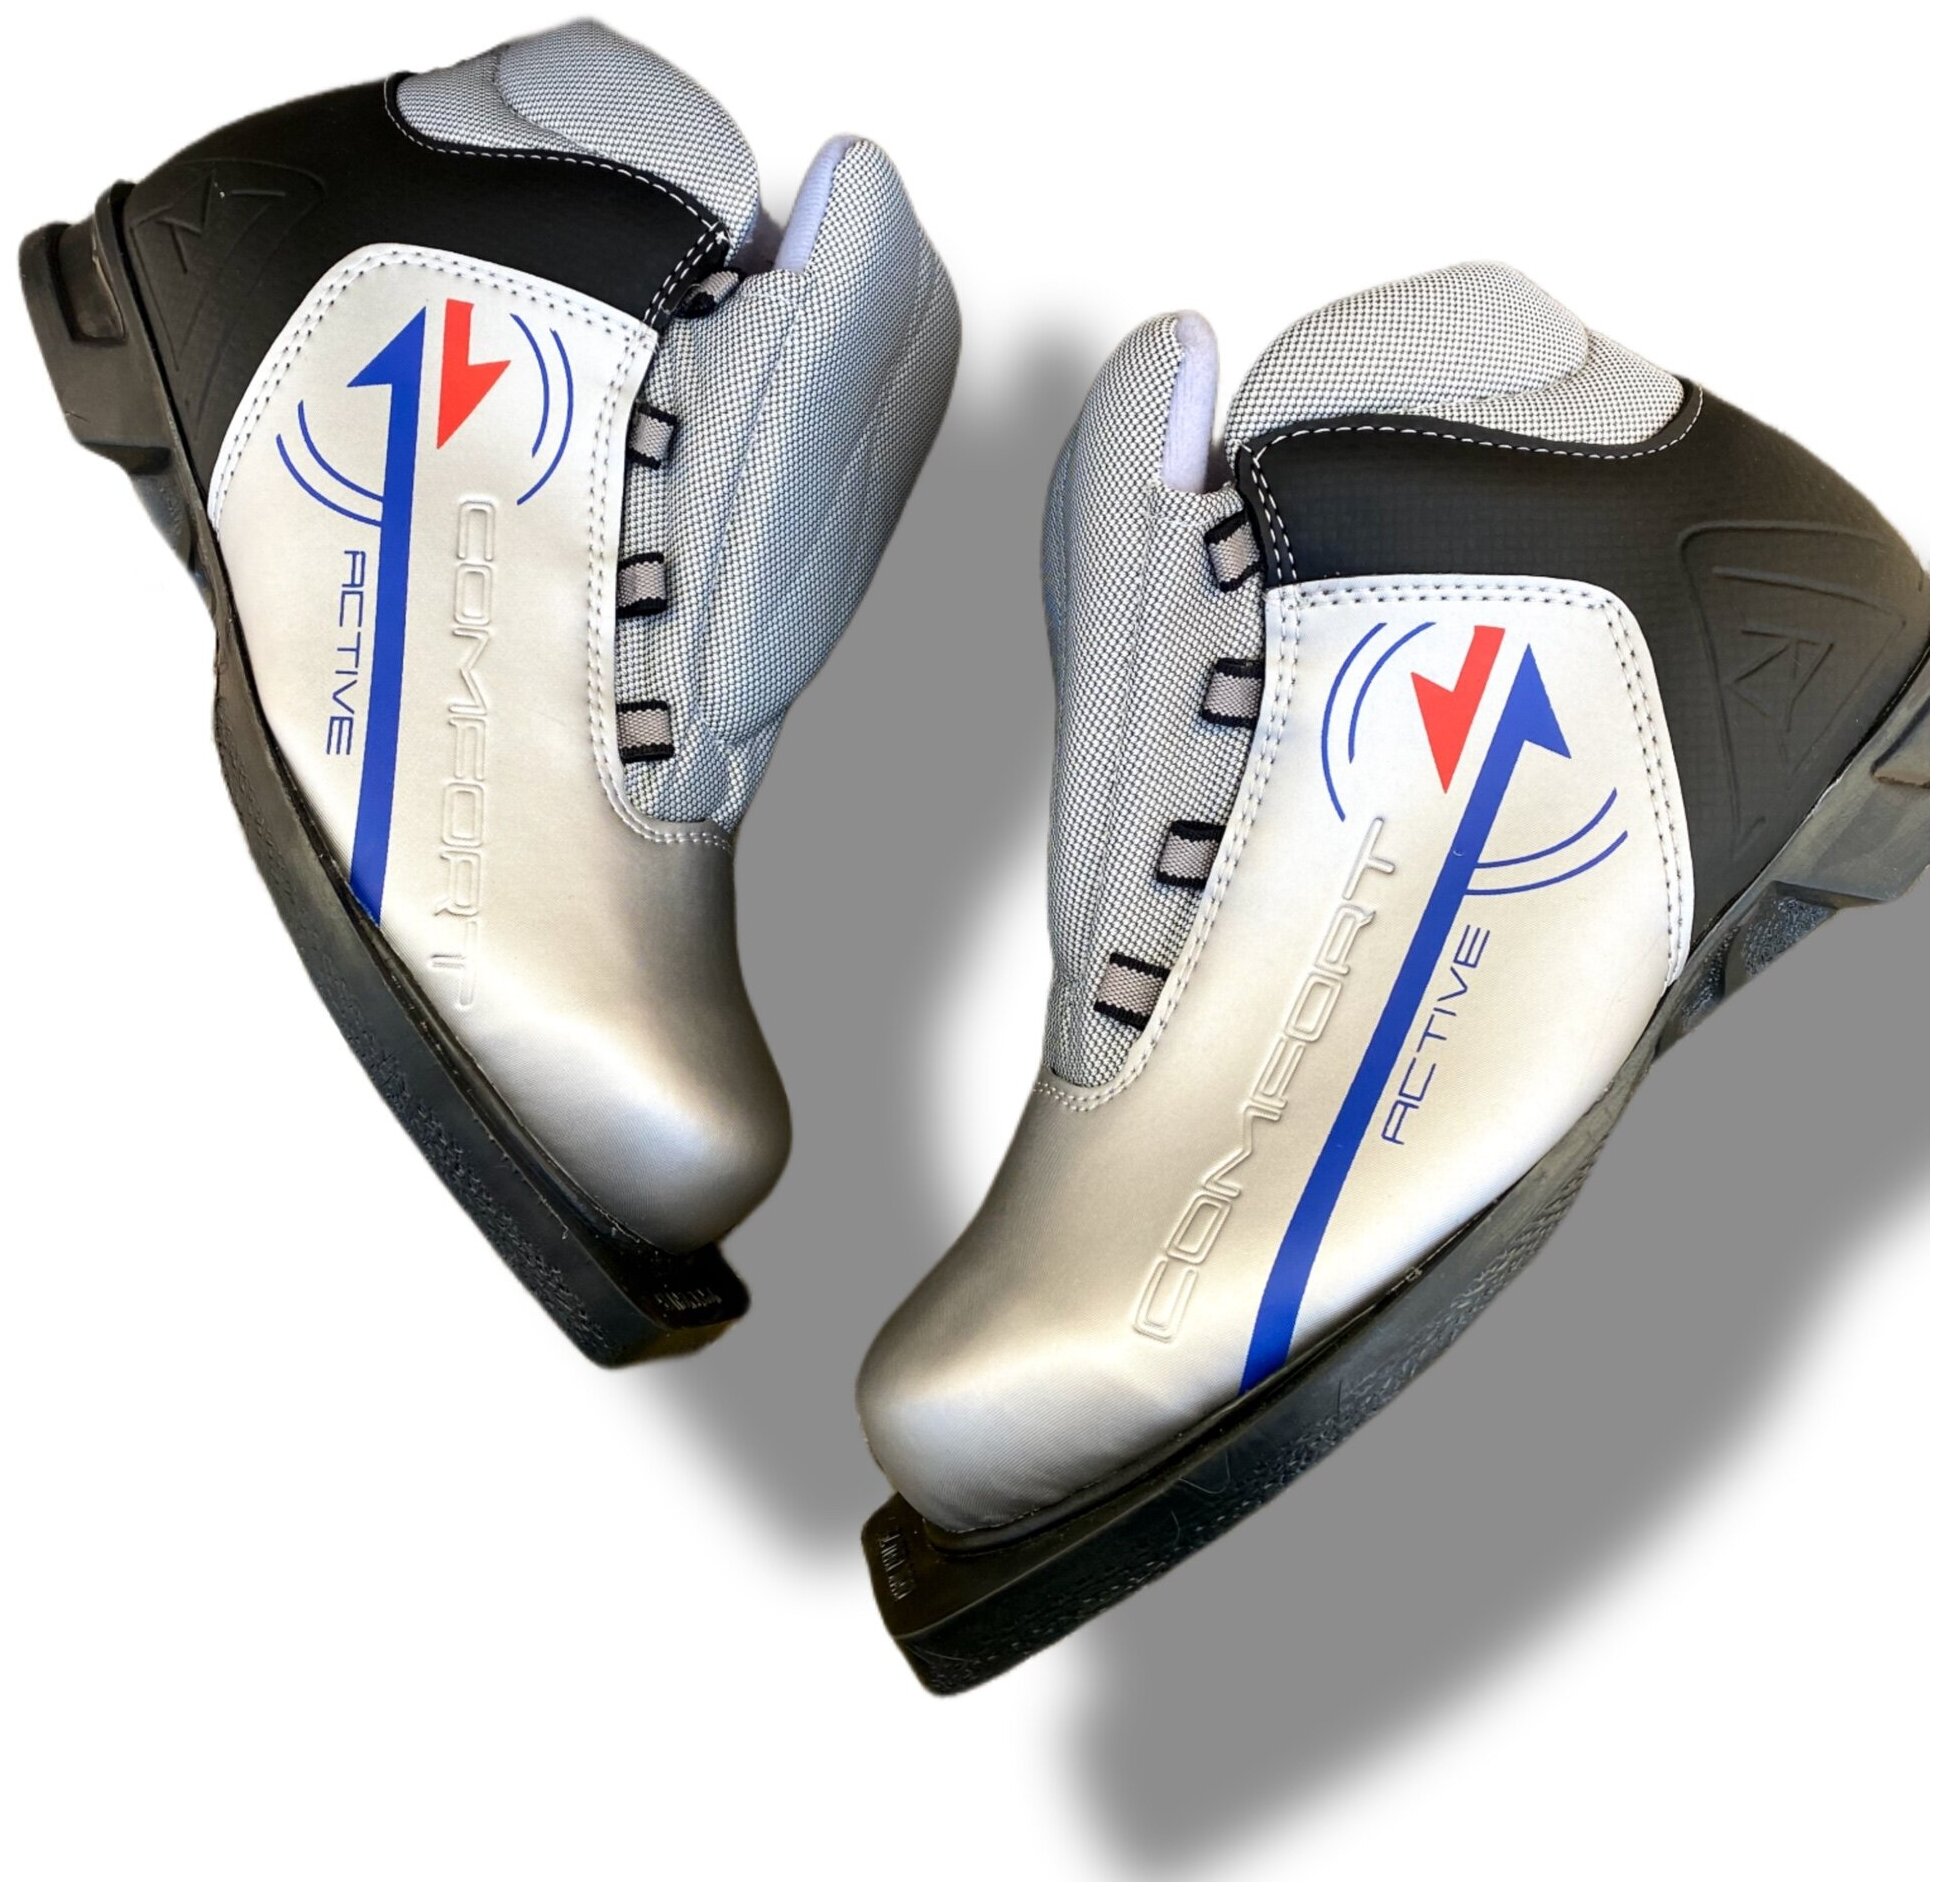 Ботинки лыжные TREK ActiveComfort NN75, цвет серебро-черный, лого синий, размер 43